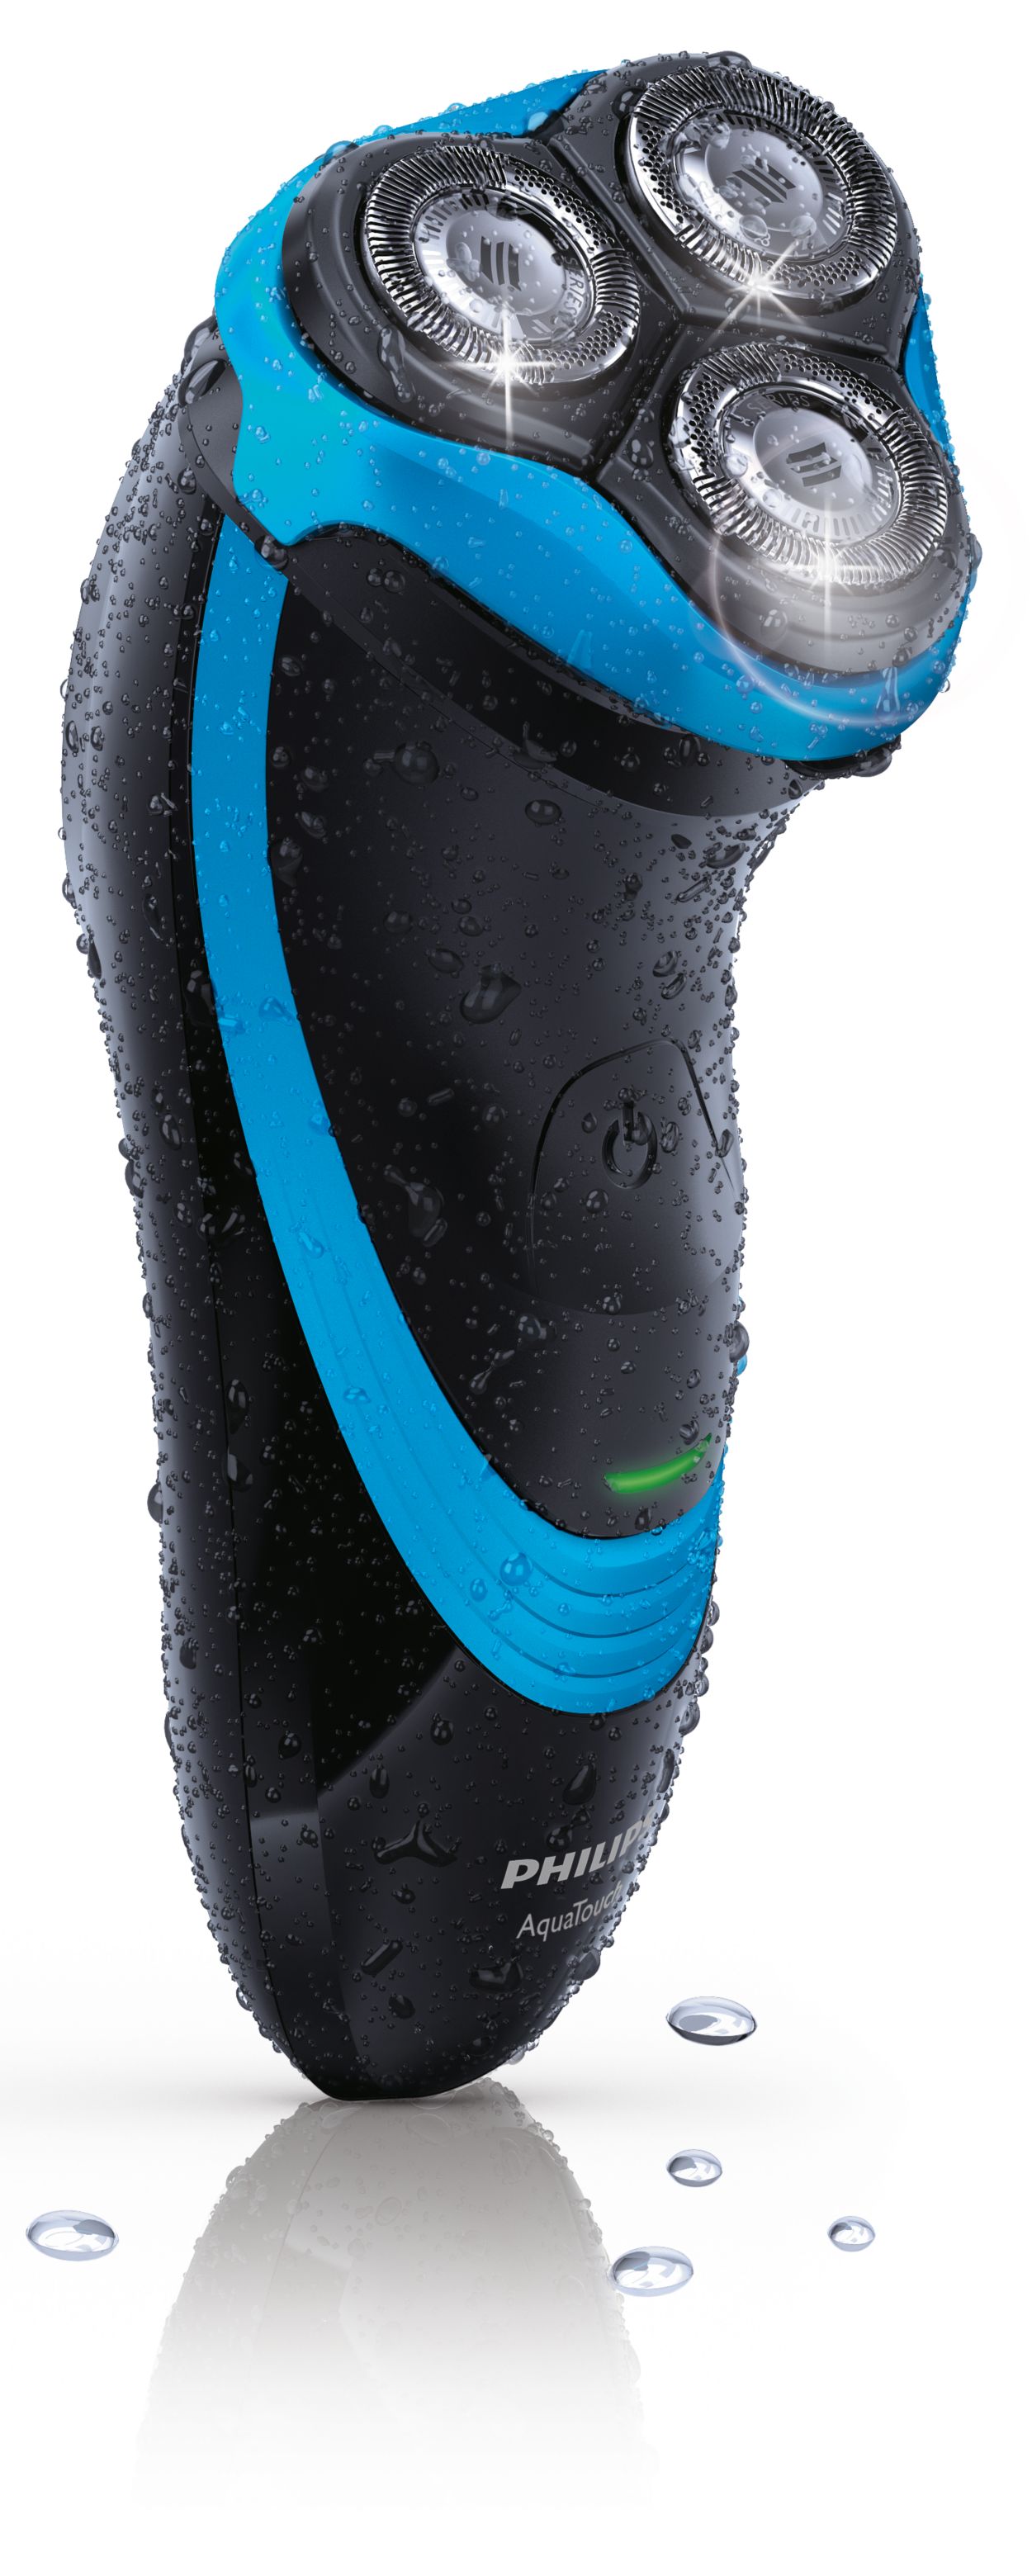 versneller gedragen Ontwijken AquaTouch elektrisch scheerapparaat voor nat en droog scheren AT752/20 |  Philips